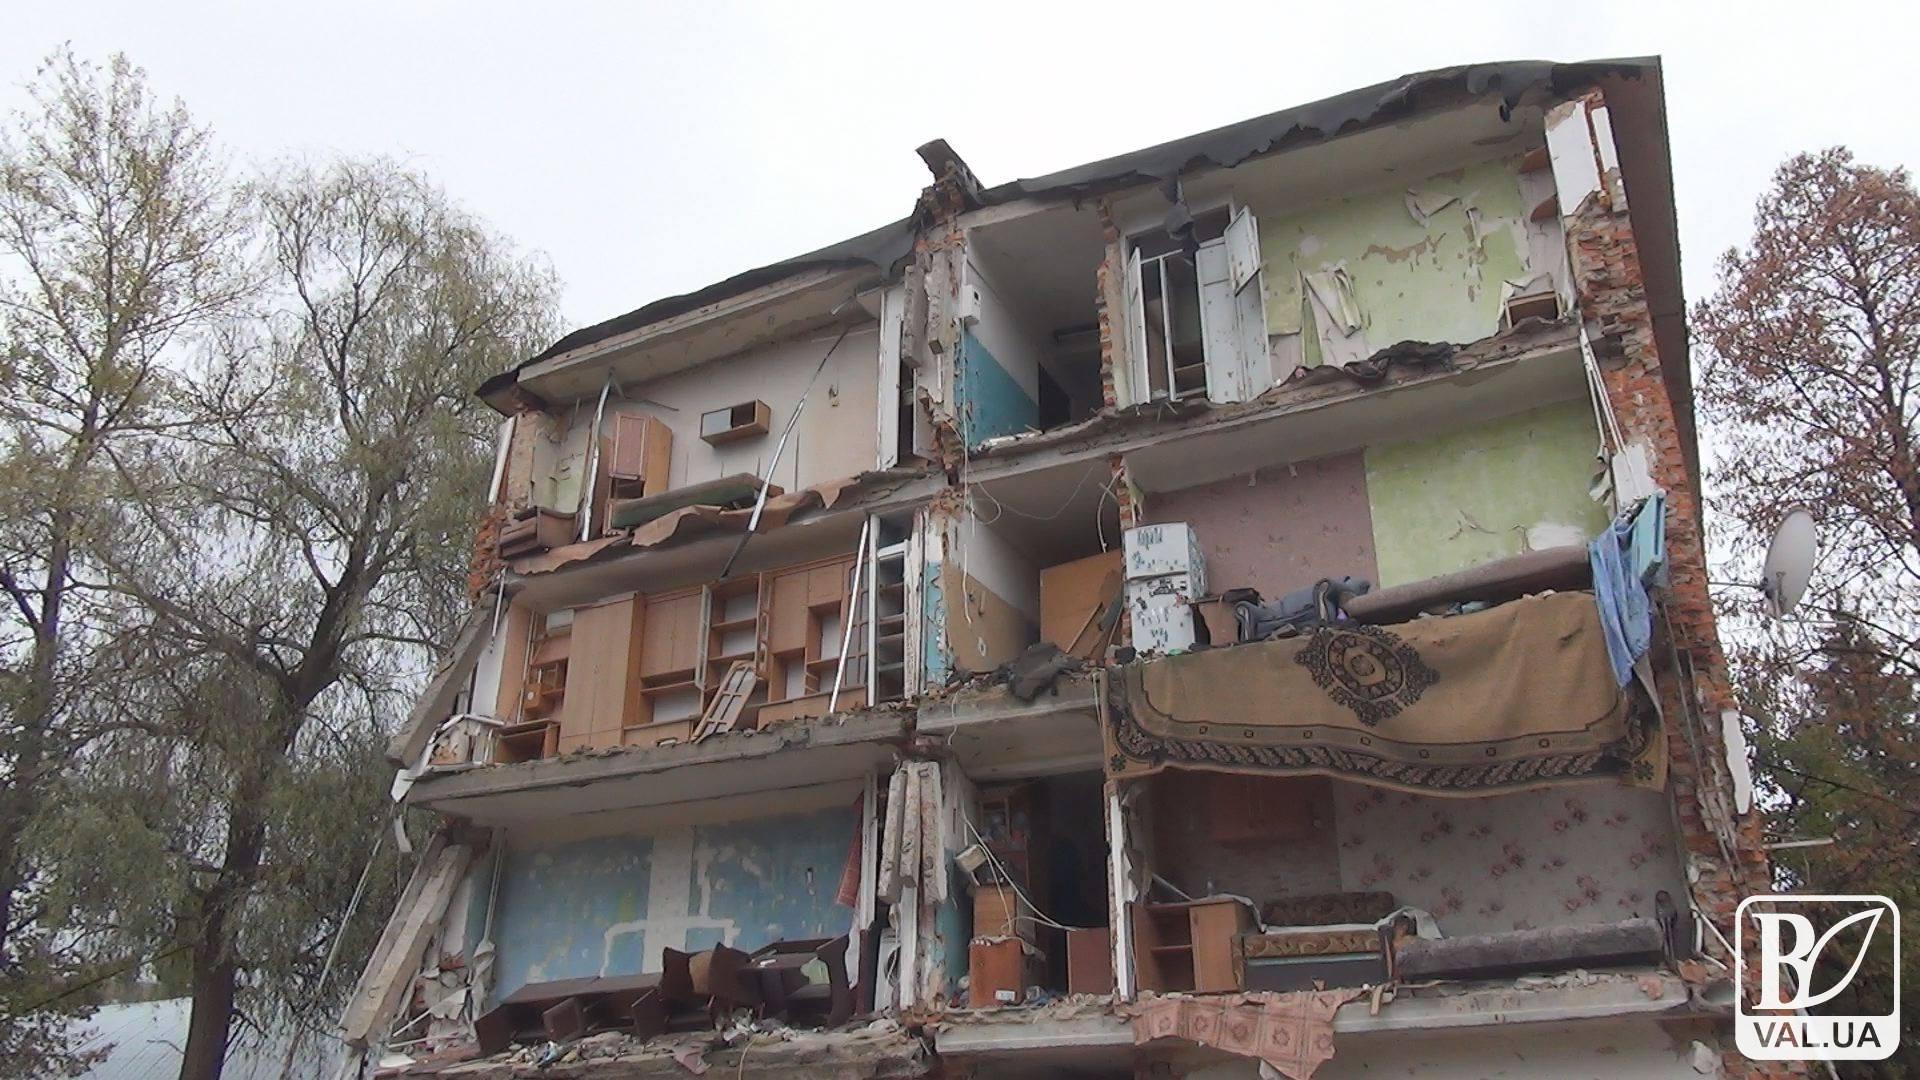 Жителям разрушенного общежития на Попудренко продолжат проживание во временных жилищах